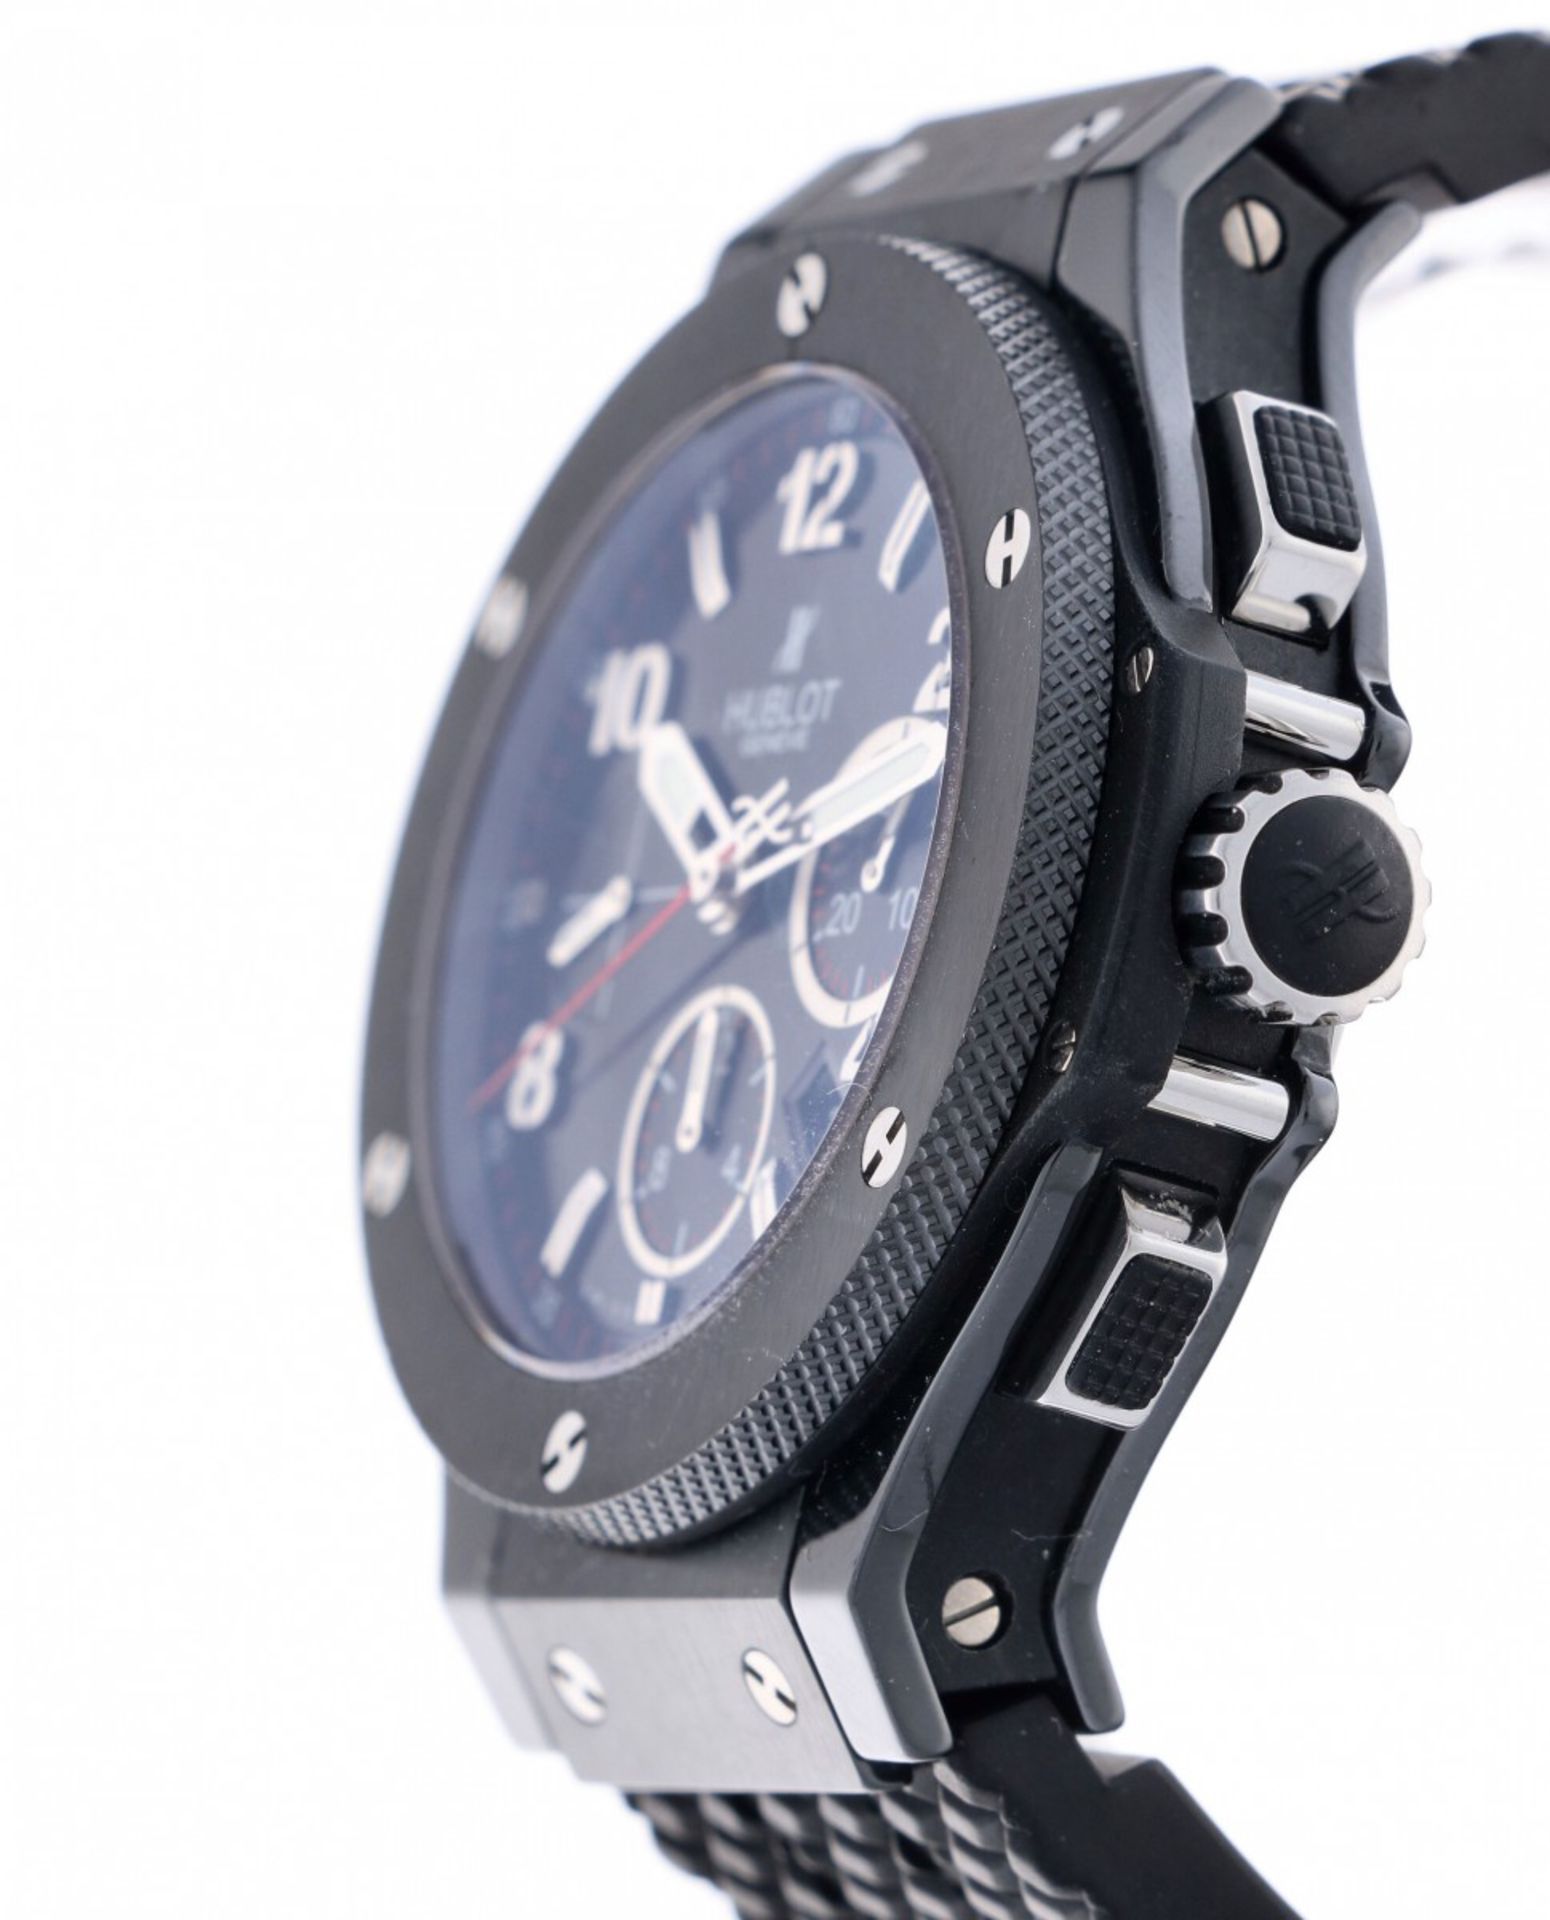 Hublot Big Bang 342.CX.130.RX - Men's watch - ca. 2014 - Image 5 of 6